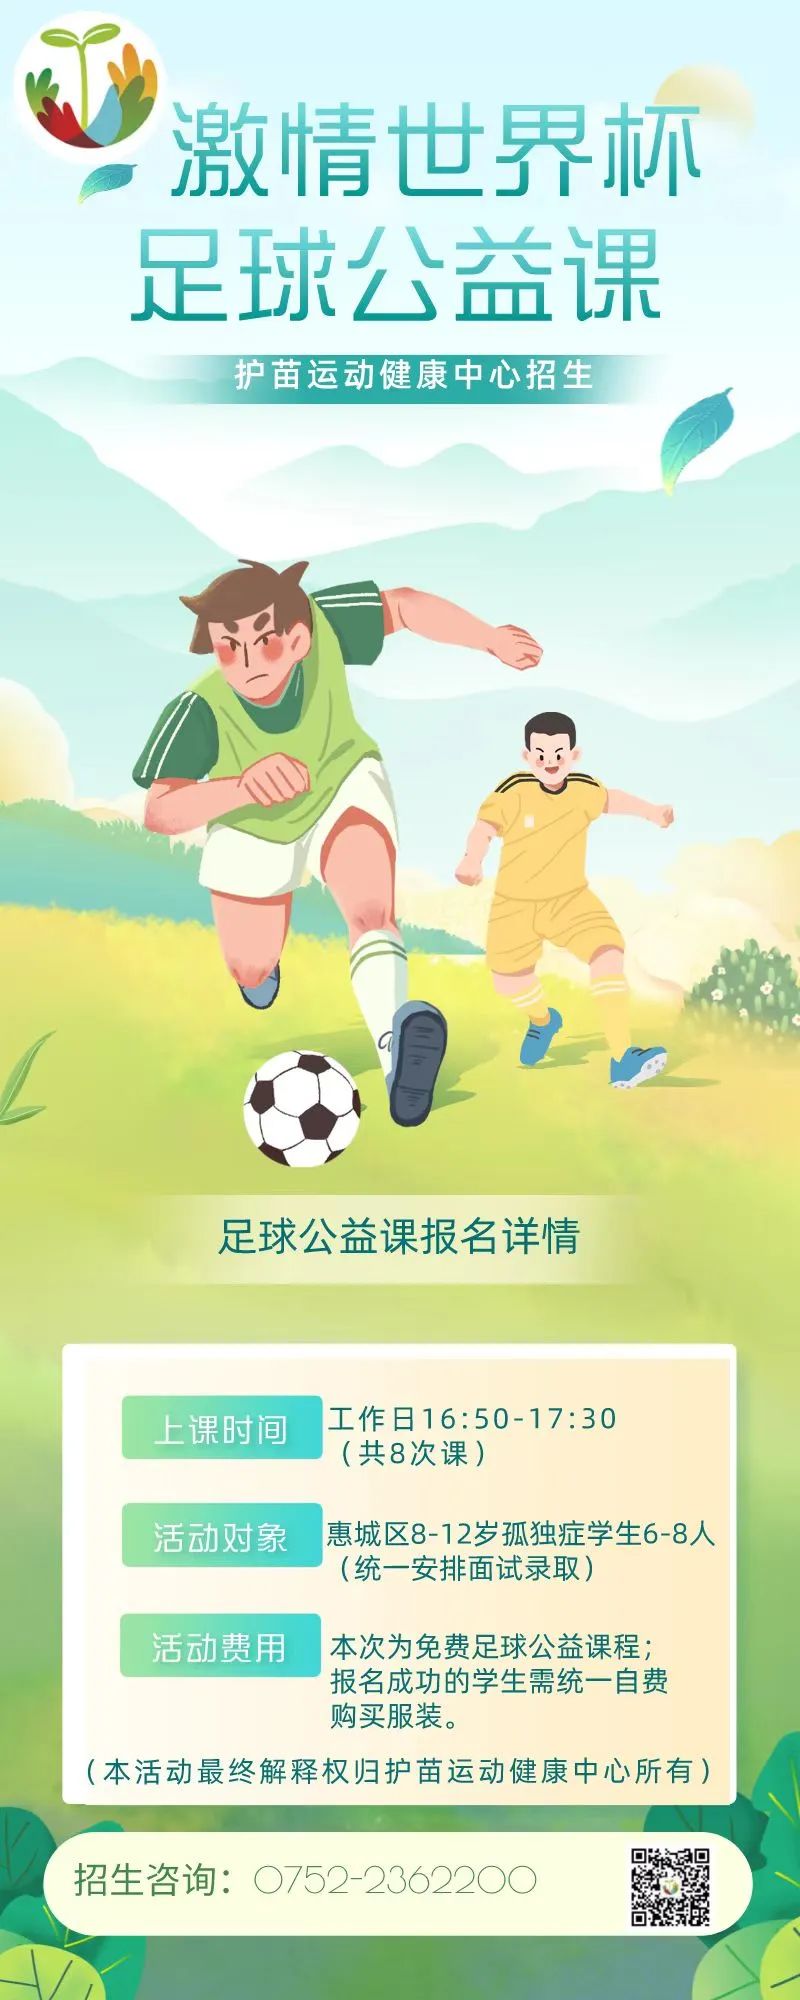 护苗培智学校孤独症儿童足球公益课招生